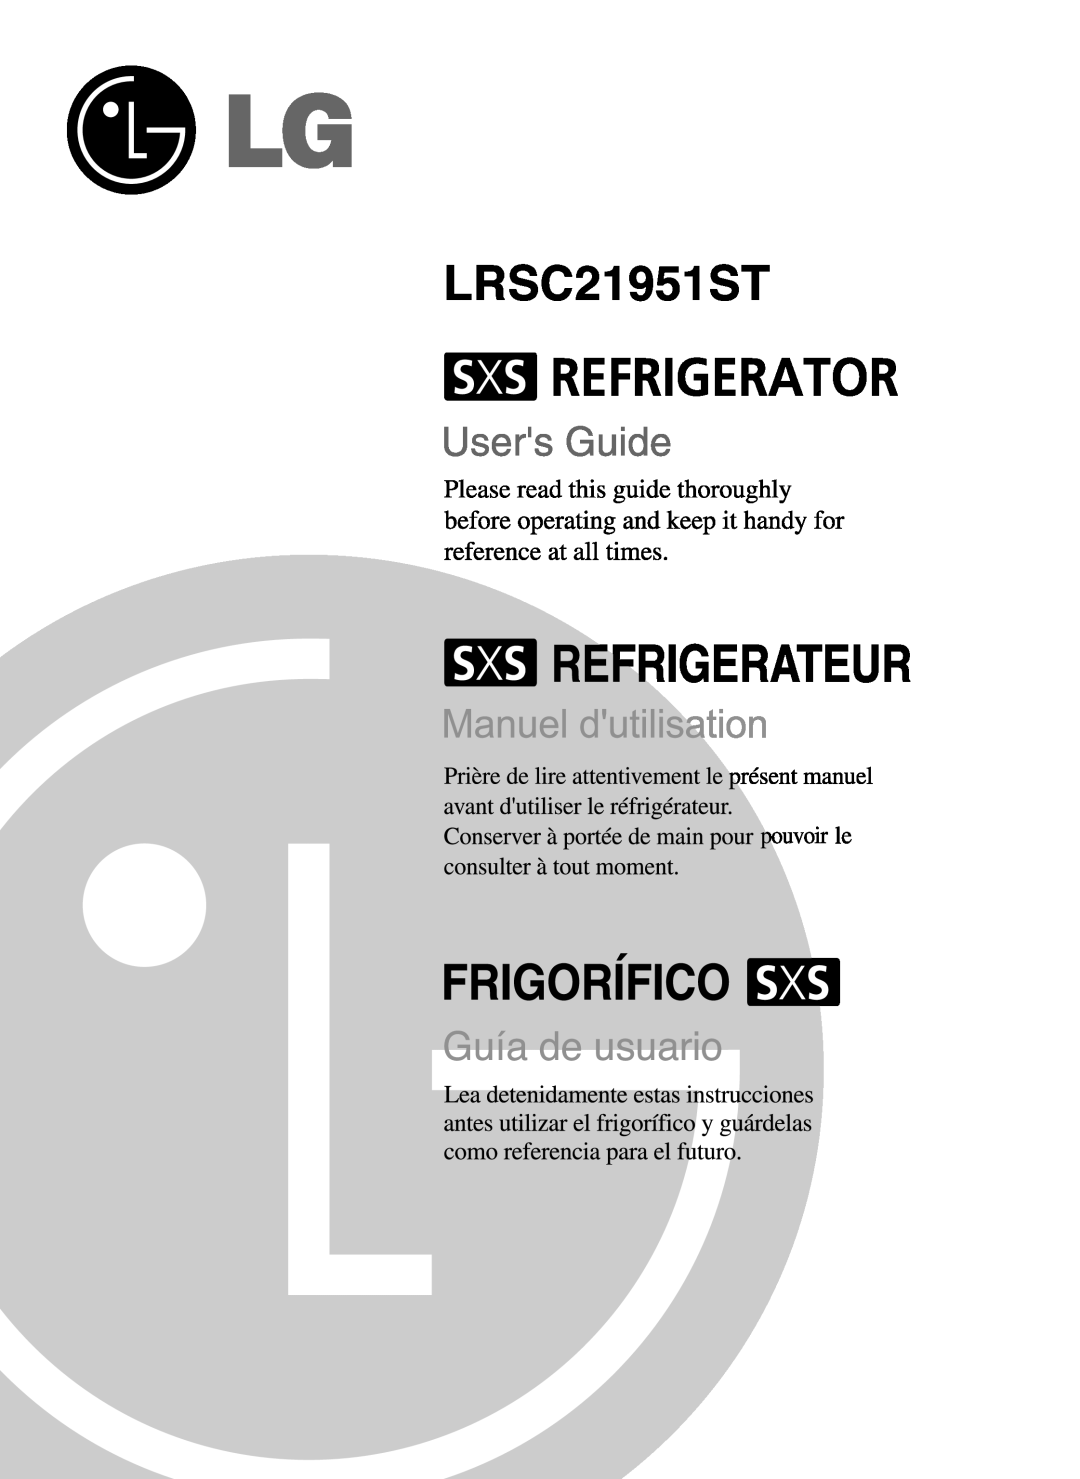 LG Electronics LRSC21951ST manual 